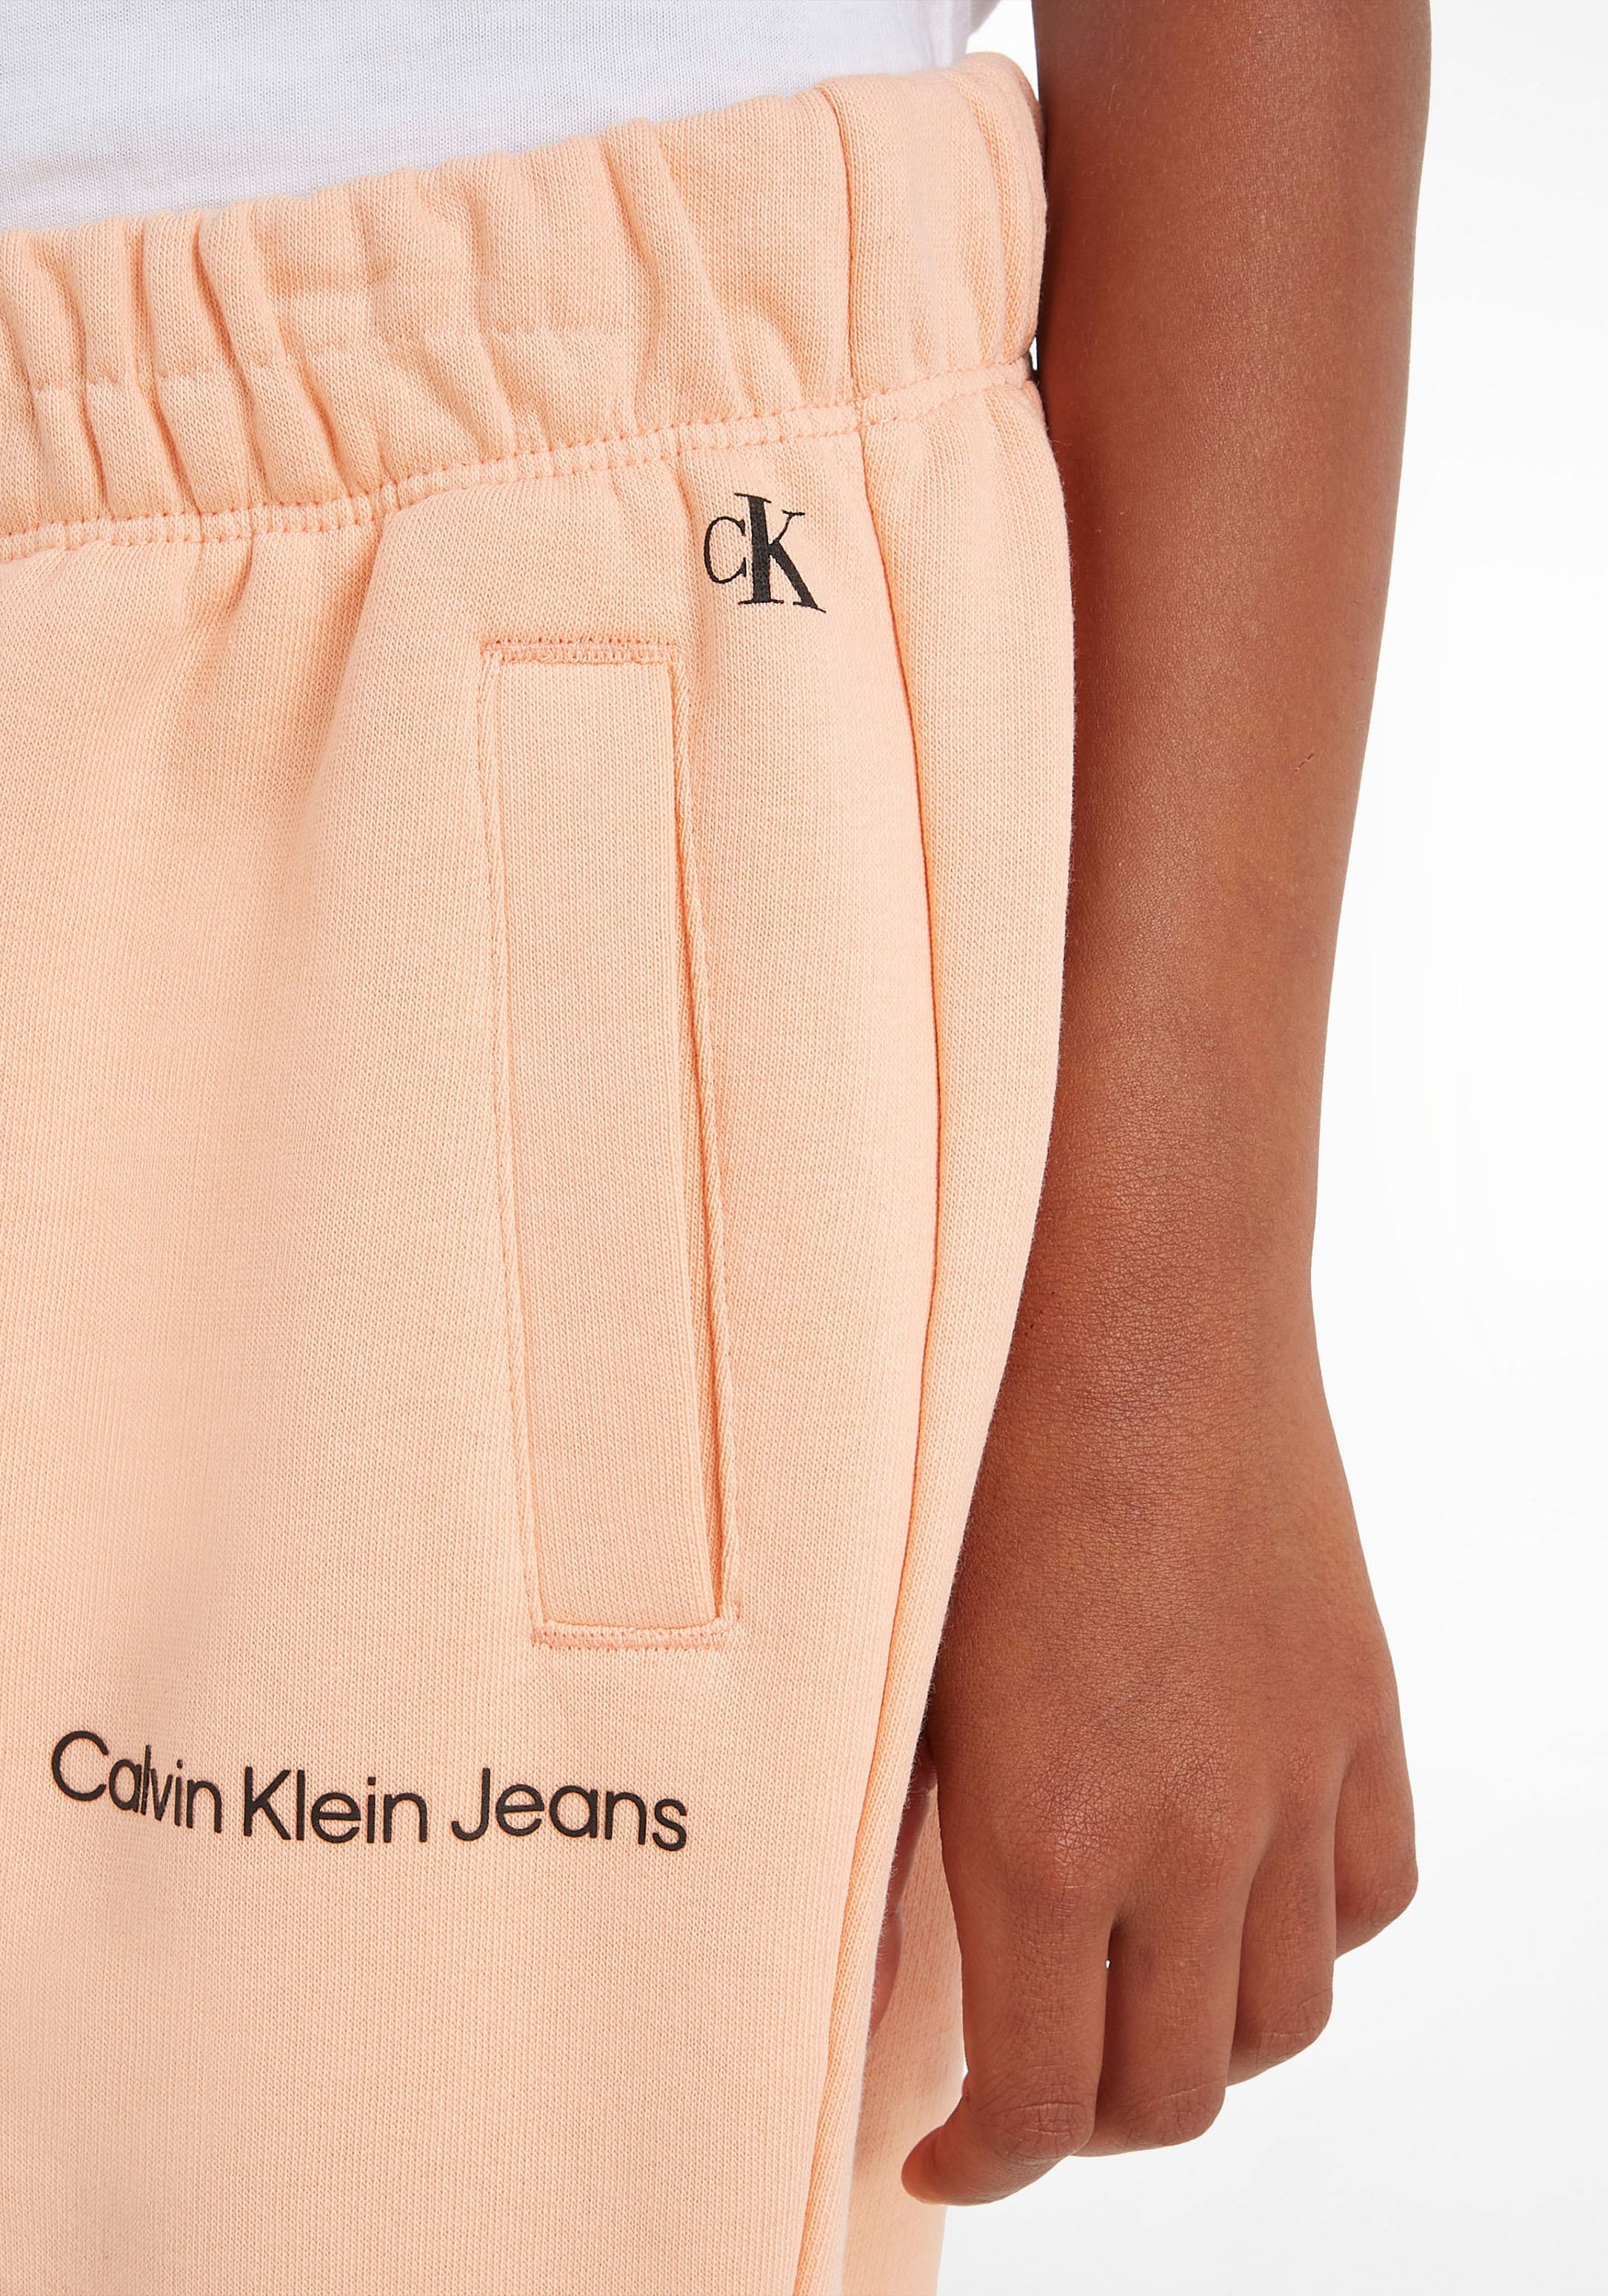 Calvin Klein Jeans Sweathose, Kinder Kids Junior MiniMe,mit Calvin Klein  Logoschriftzug auf dem Bein kaufen bei OTTO